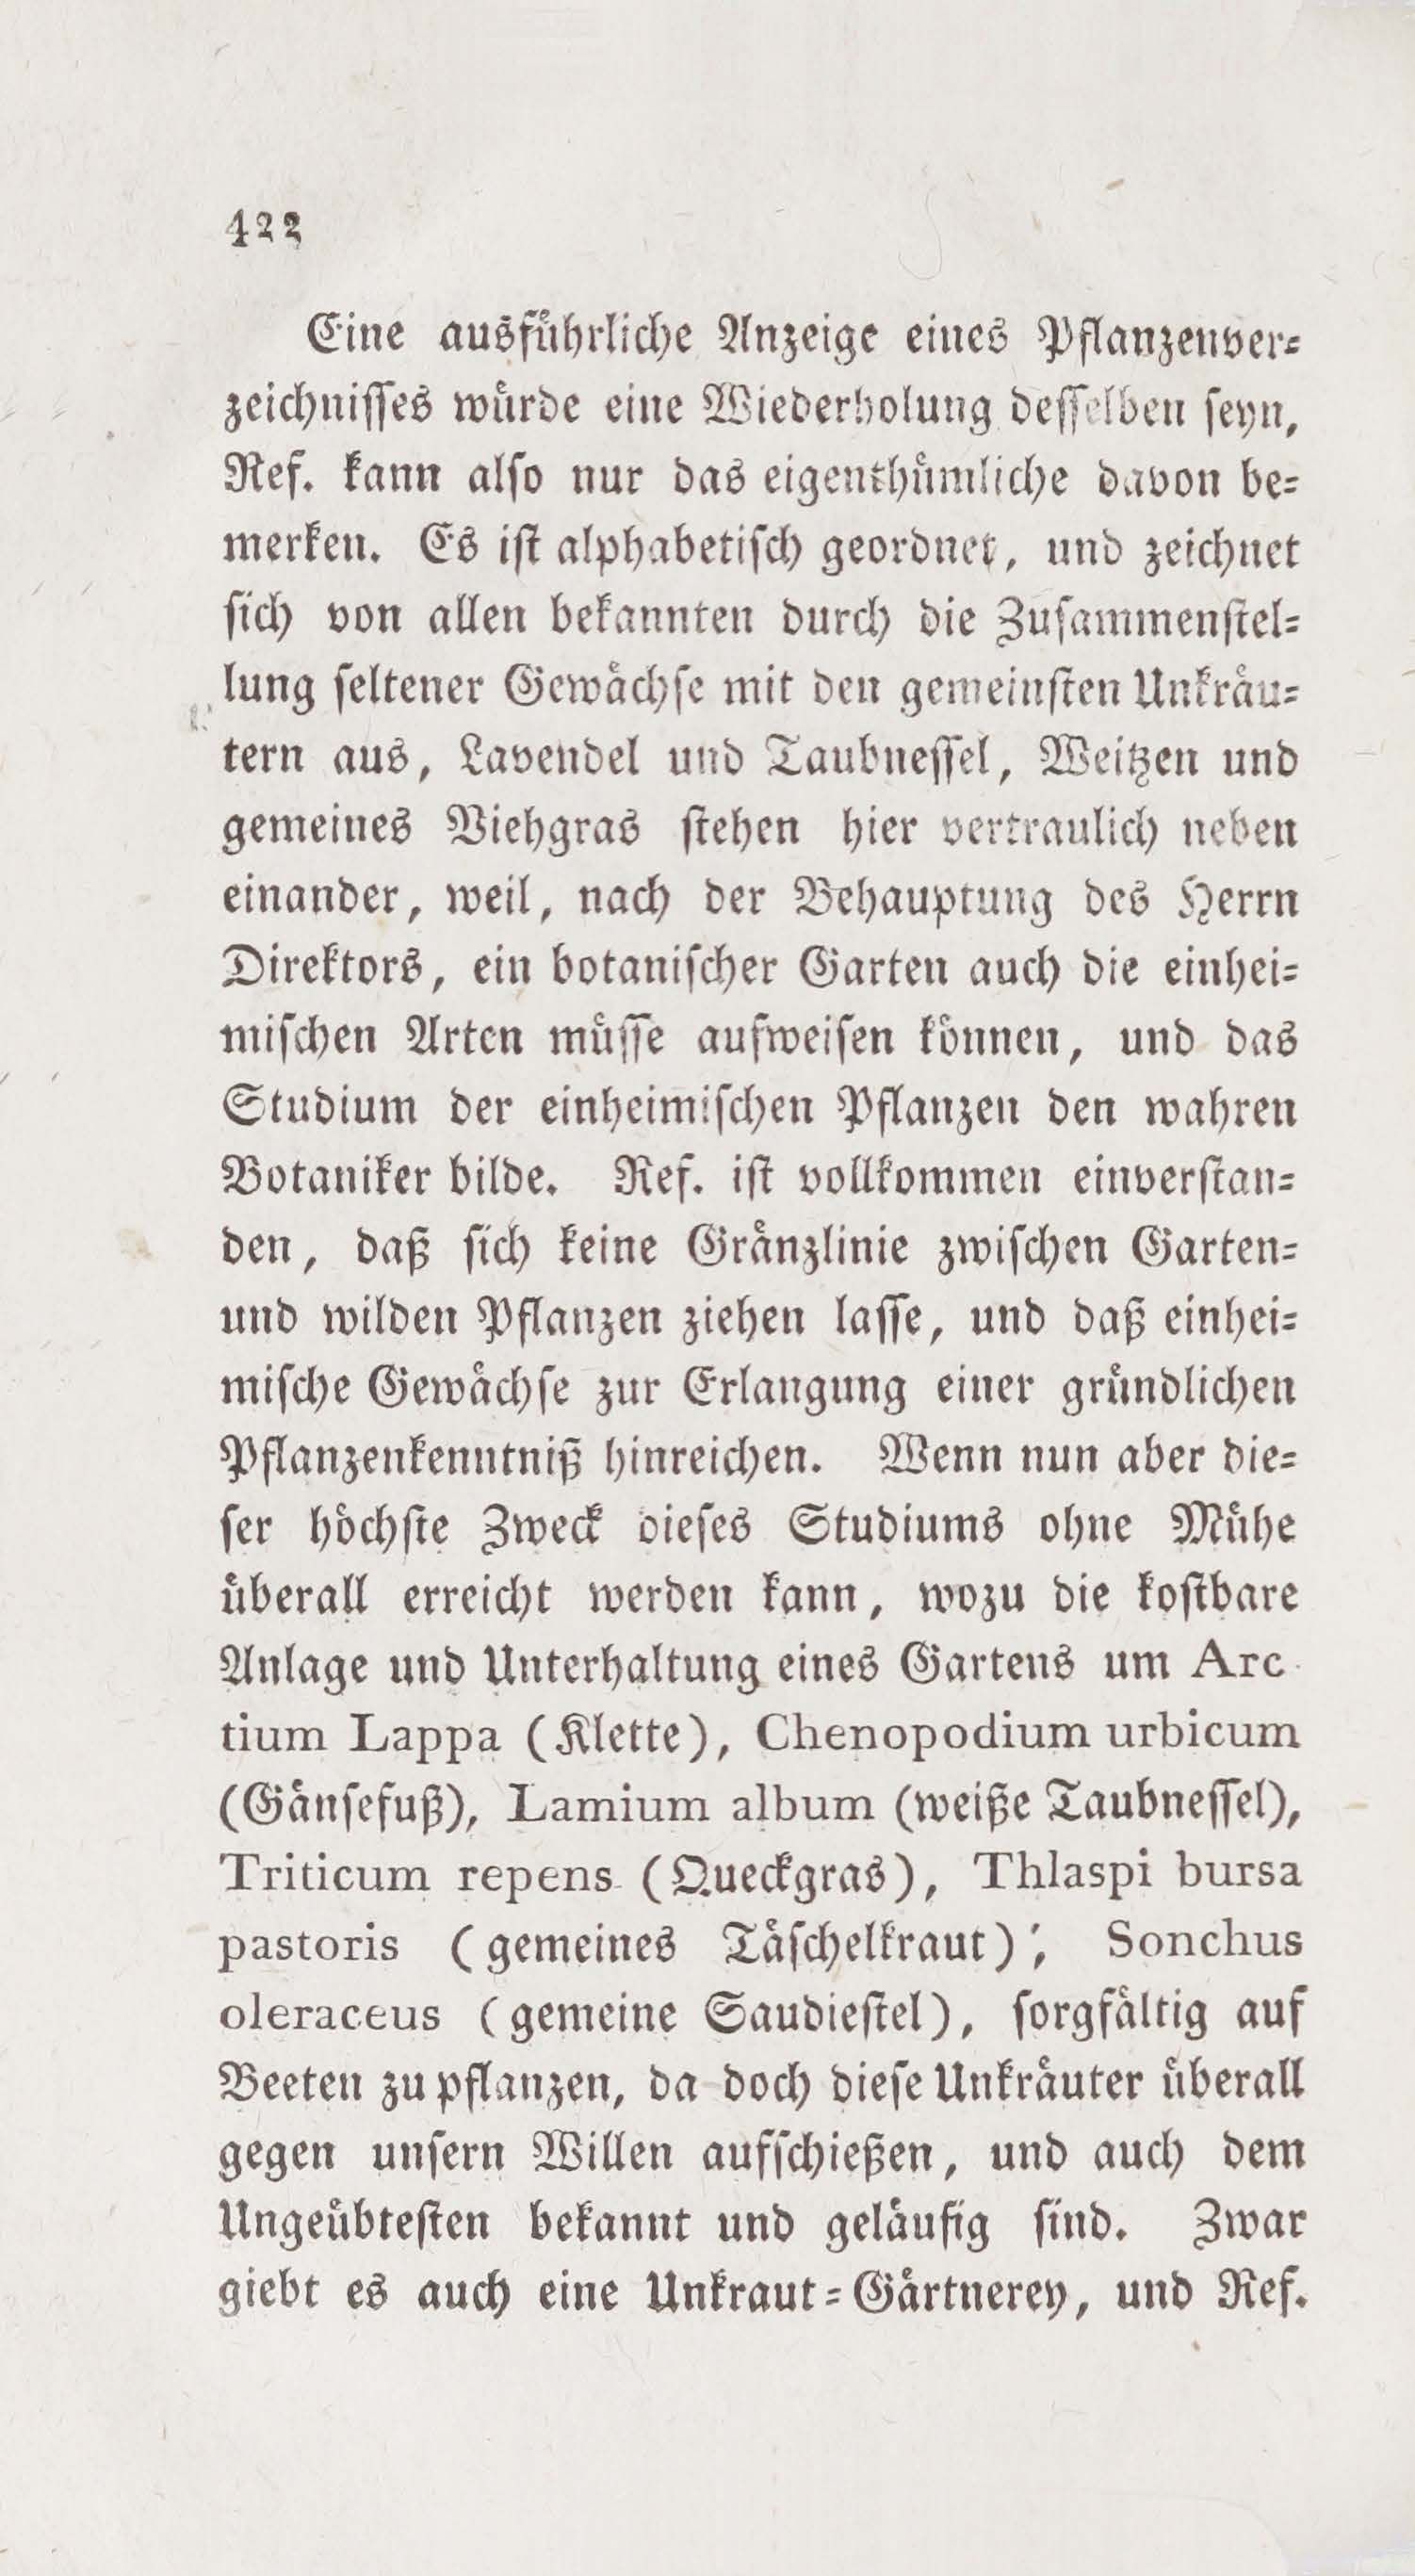 Wöchentliche Unterhaltungen [6] (1807) | 430. (422) Main body of text